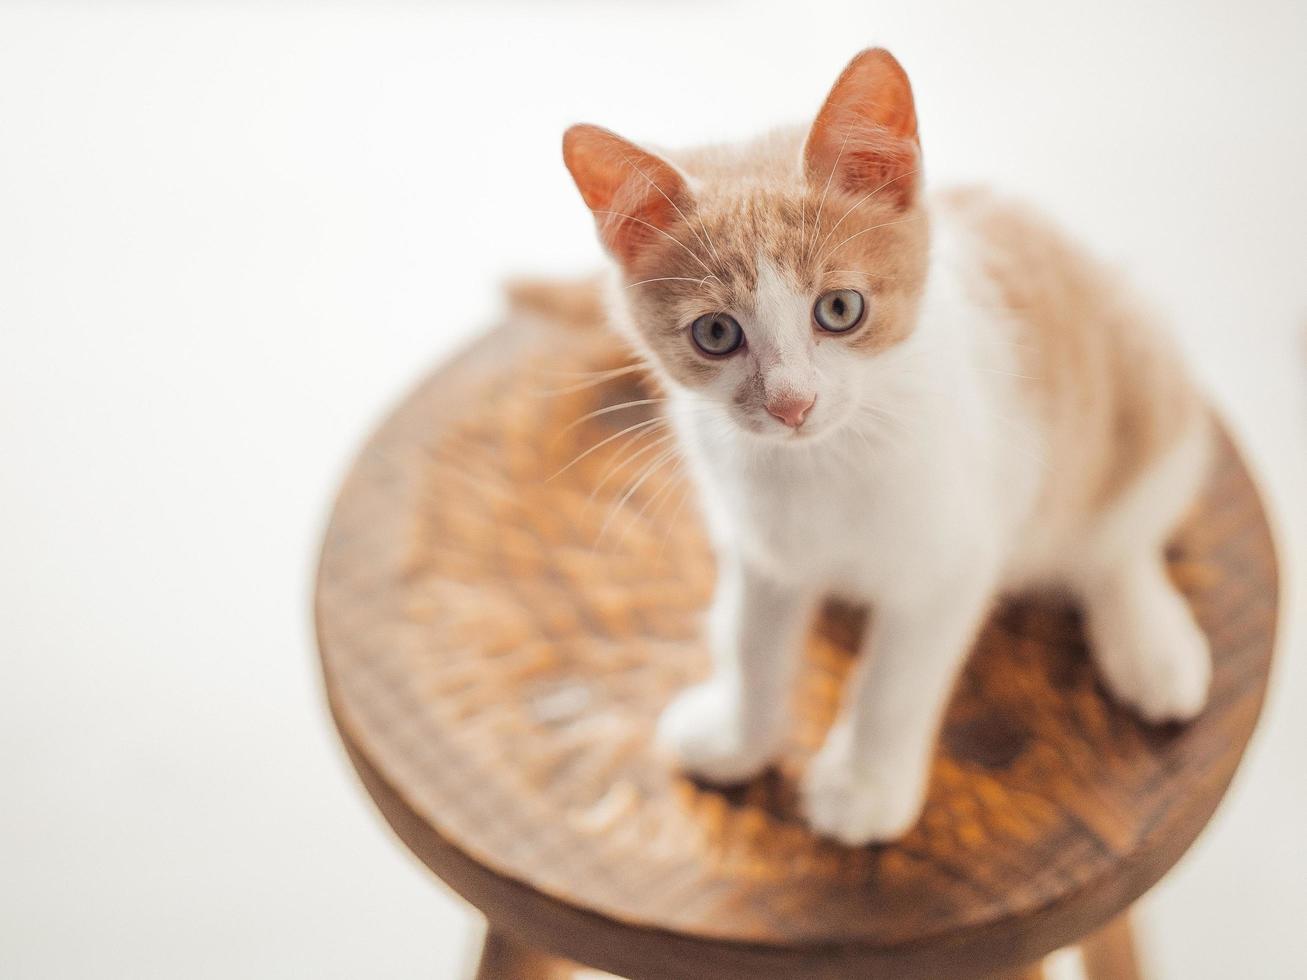 giovane gattino con bellissimi occhi azzurri si siede su una sedia di legno foto